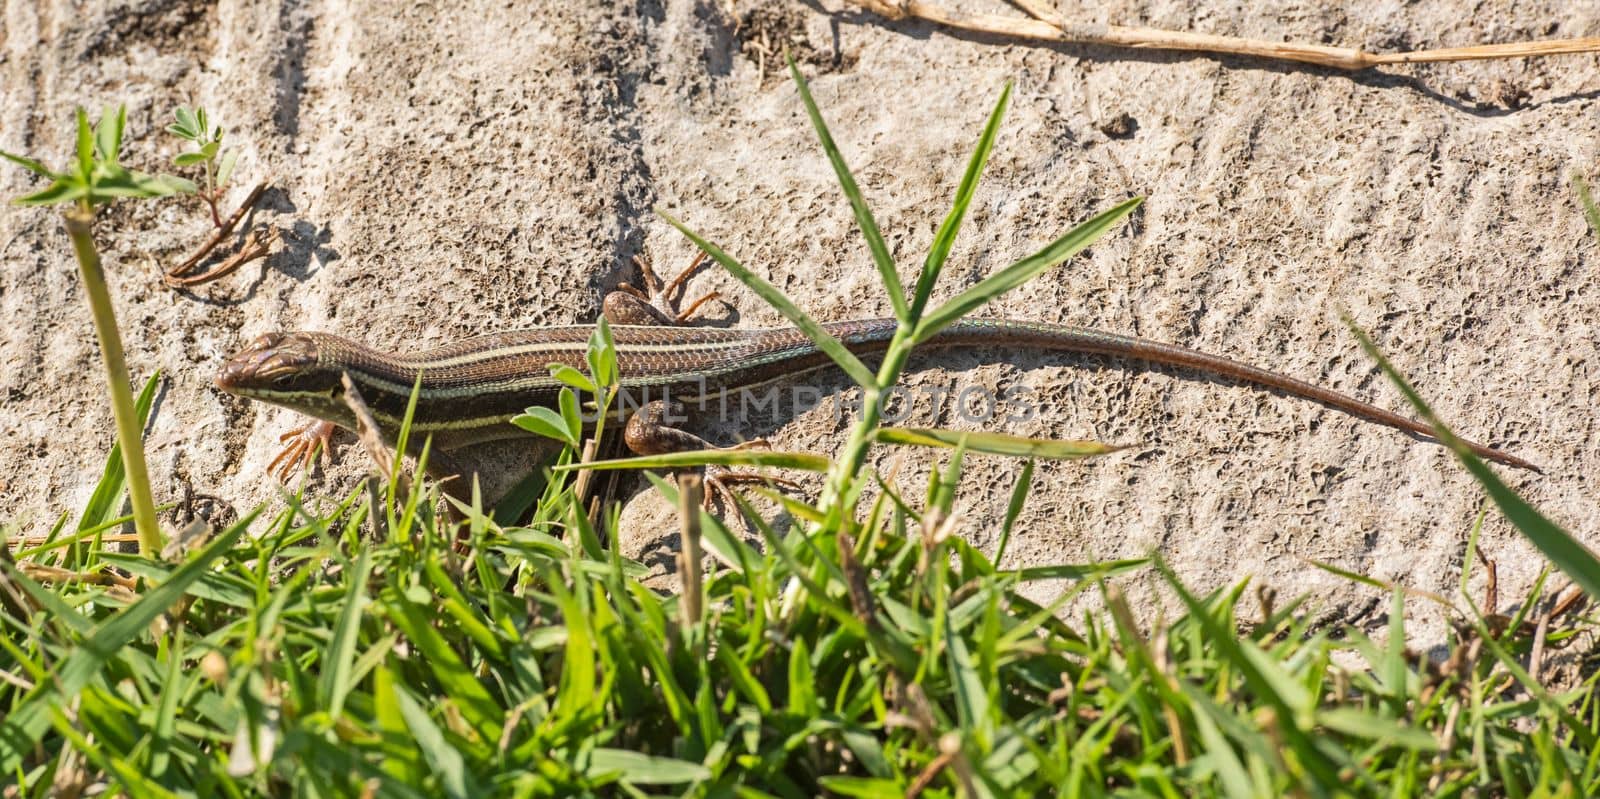 Blue-tailed skink lizard on a rock in garden by paulvinten